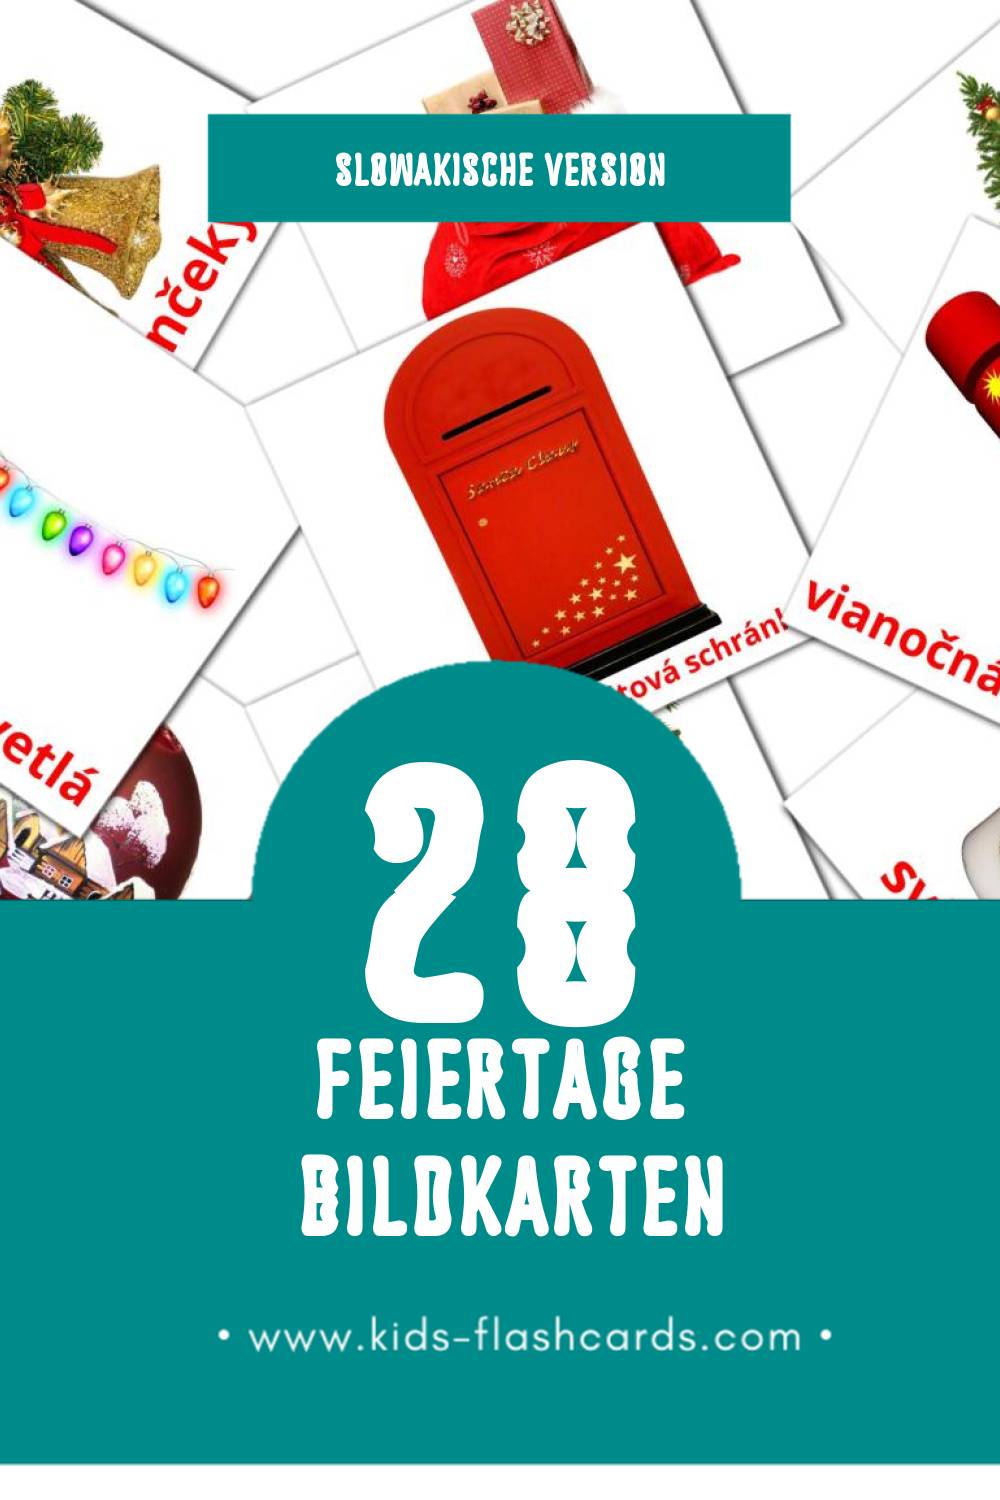 Visual Prázdniny Flashcards für Kleinkinder (28 Karten in Slowakisch)